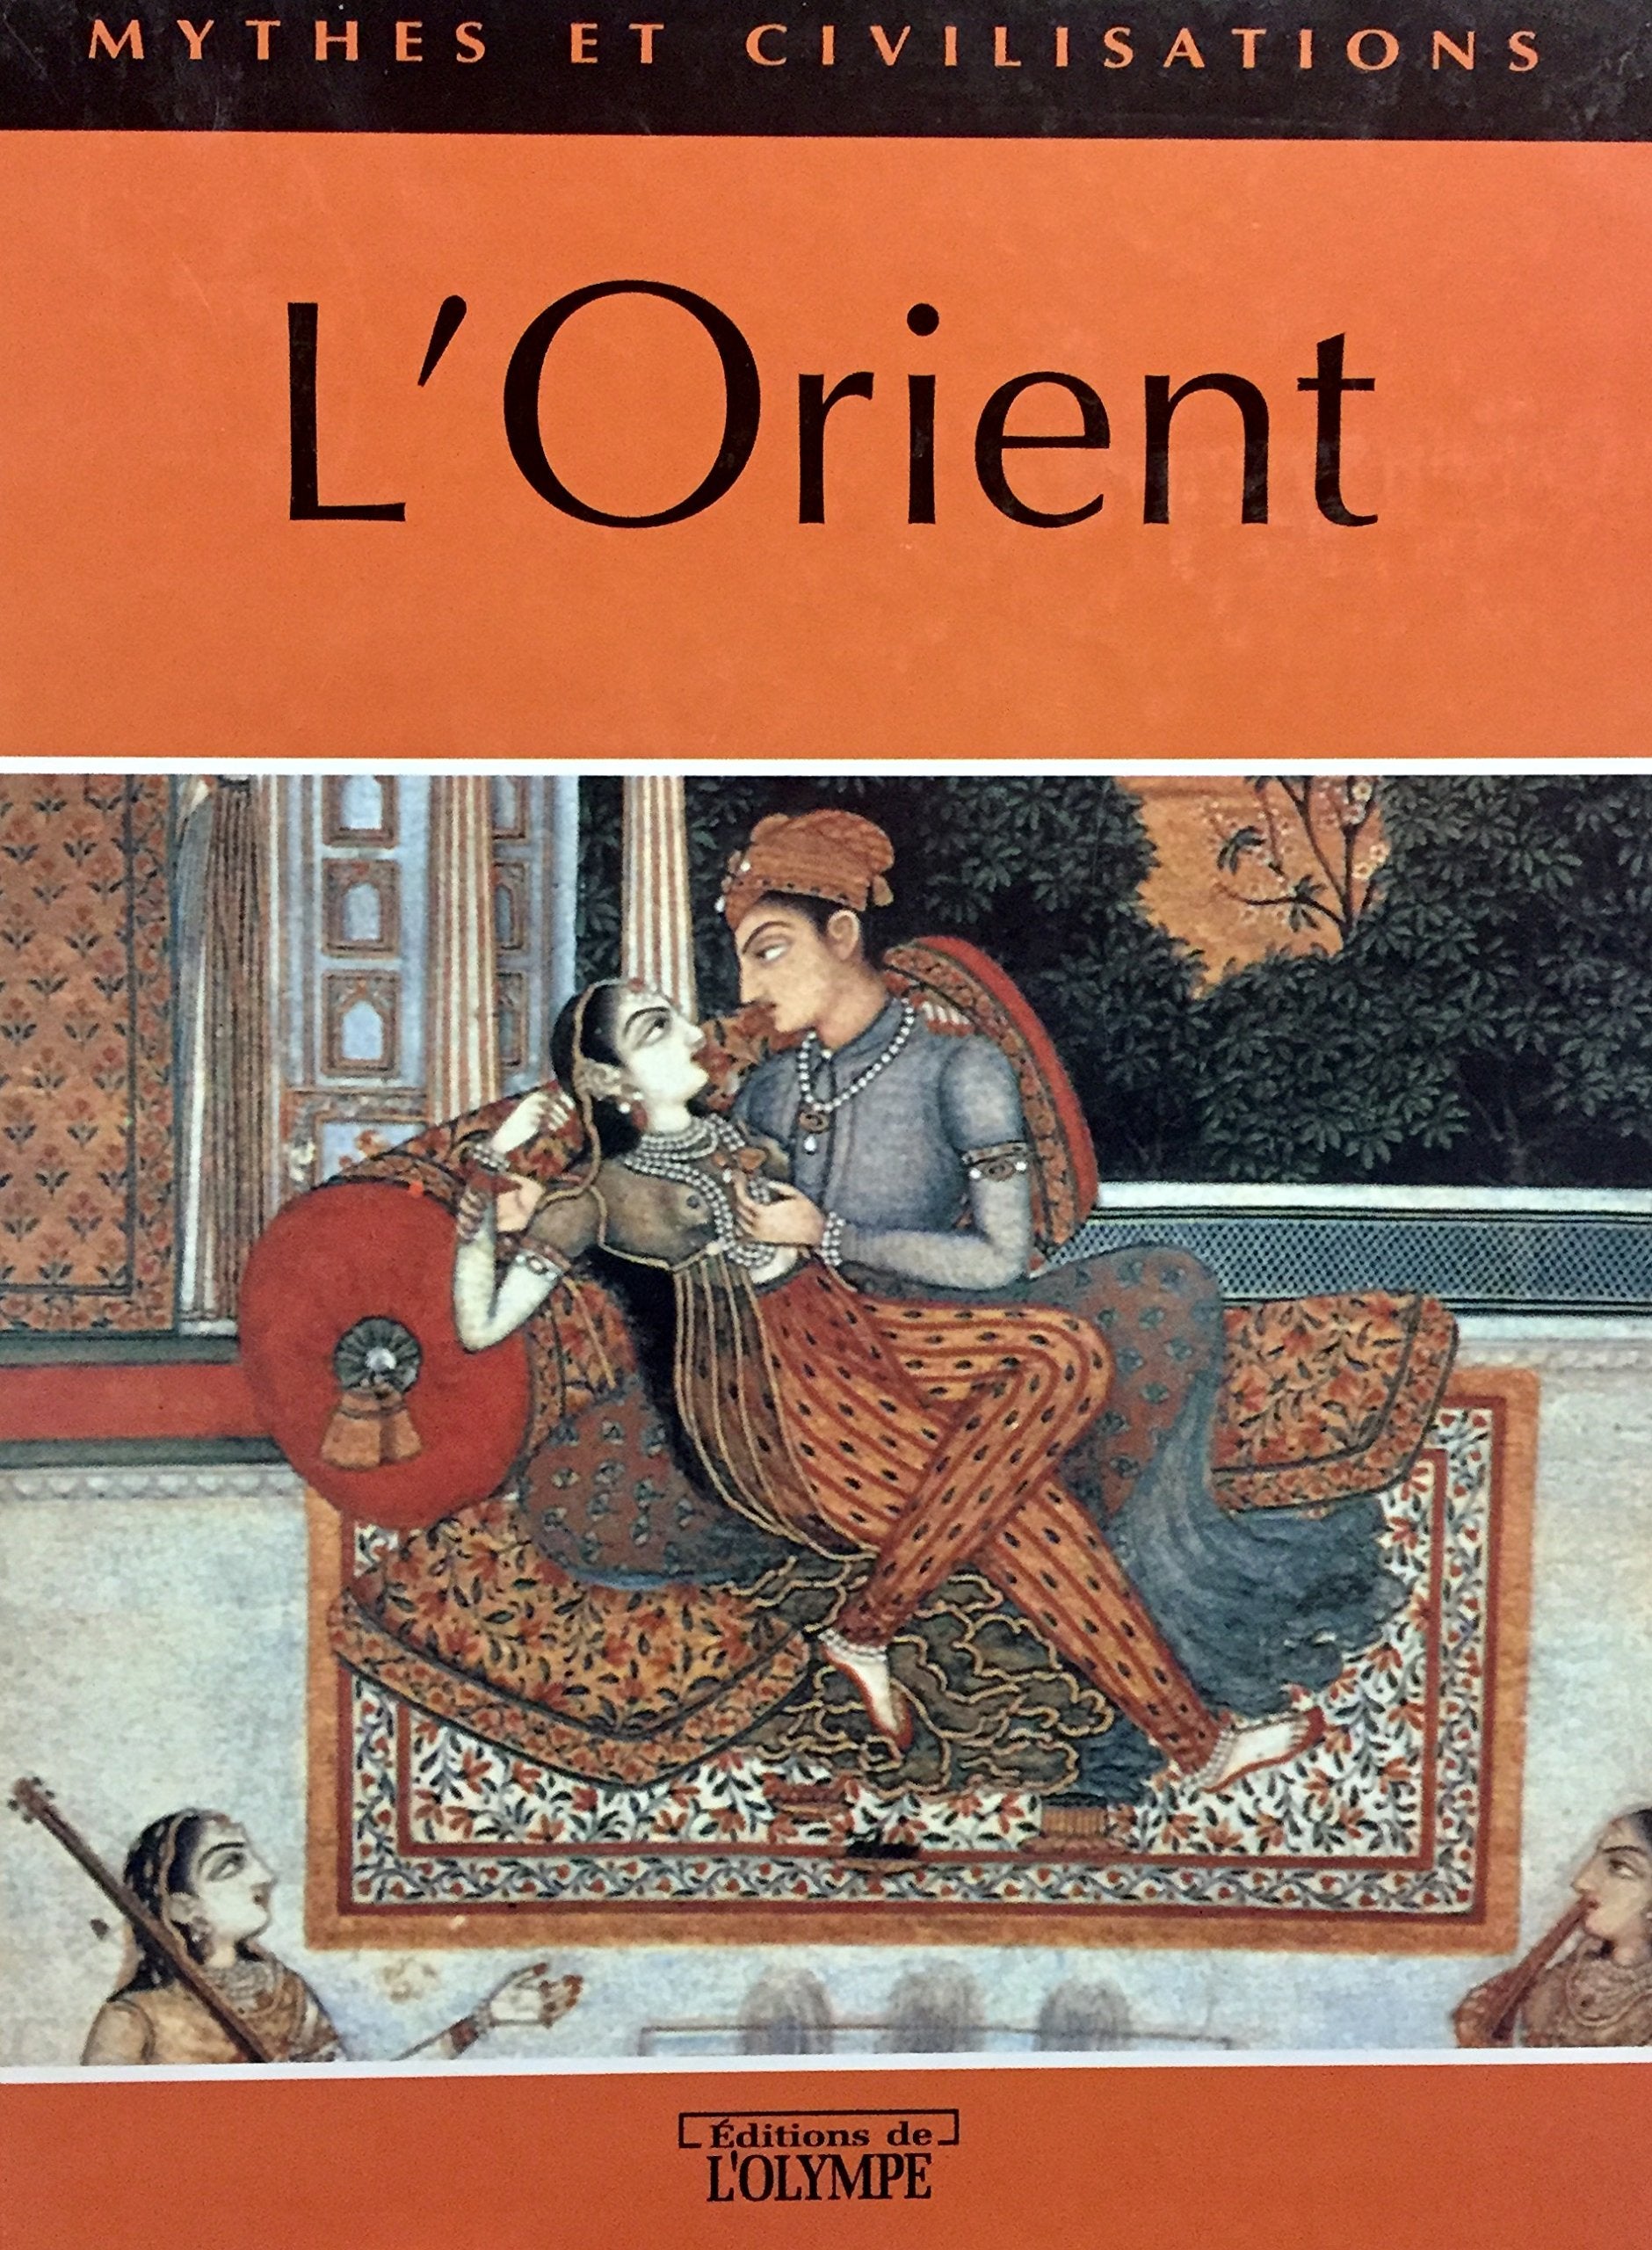 Livre ISBN 2743410132 Mythes et civilisations : L'Orient (Jean-Marc Jacot)